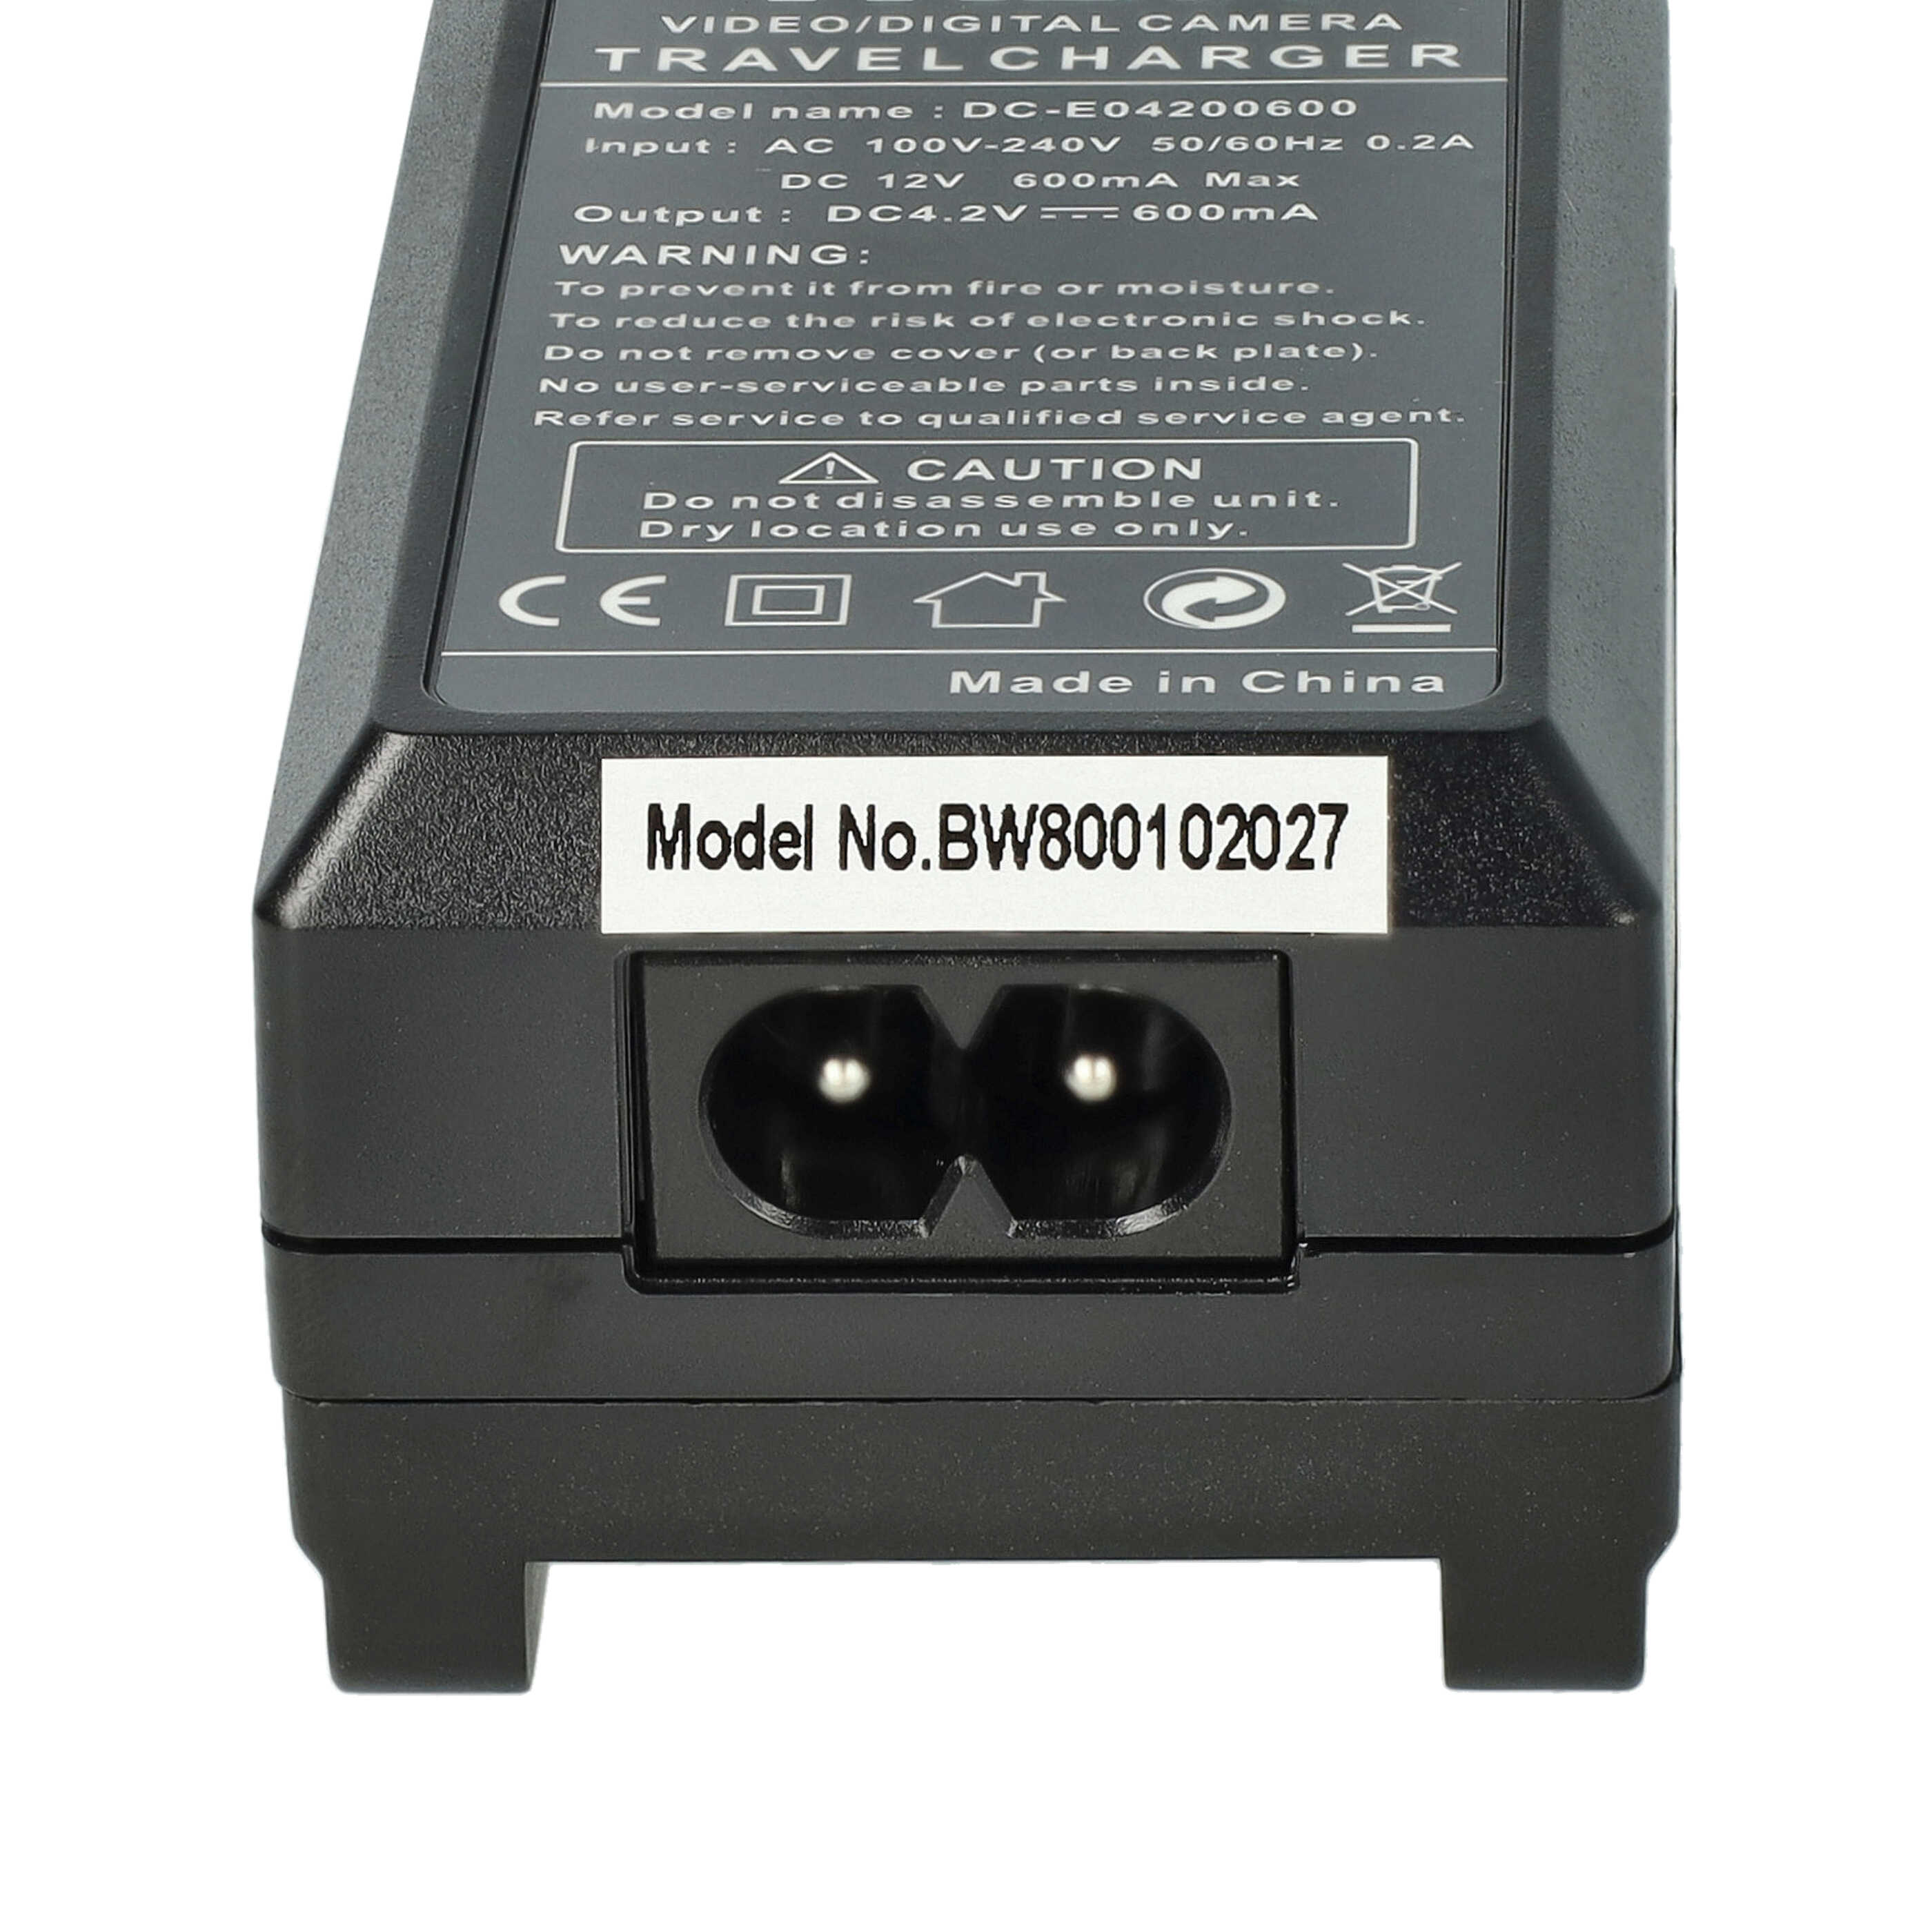 Ładowarka do aparatu Everio GZ- HM440AEU i innych - ładowarka akumulatora 0,6 A, 4,2 V